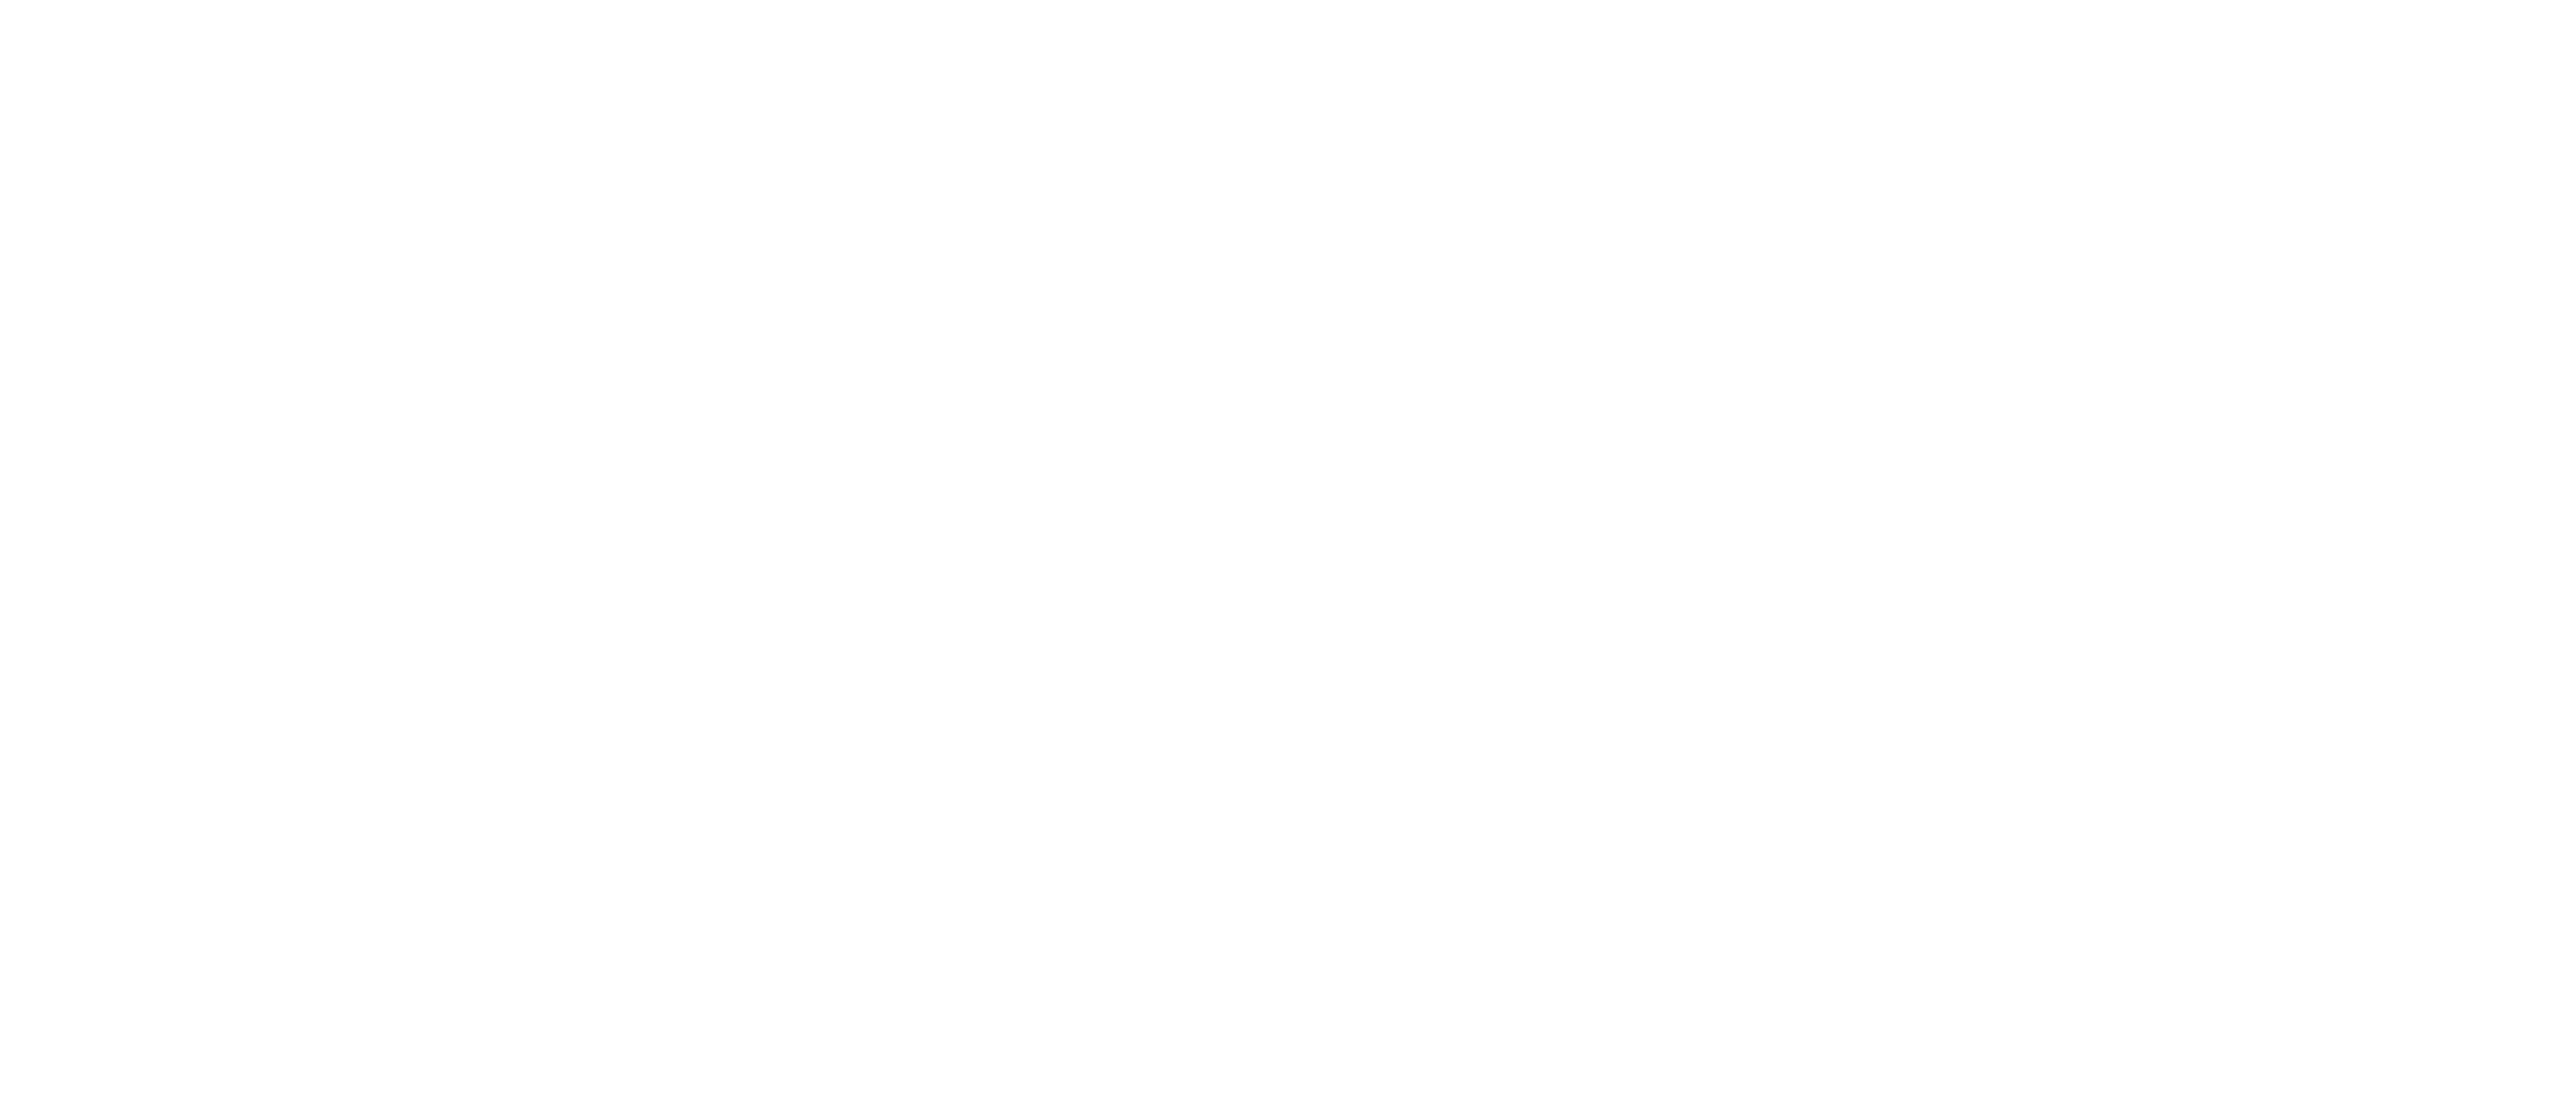 Erase4good logo